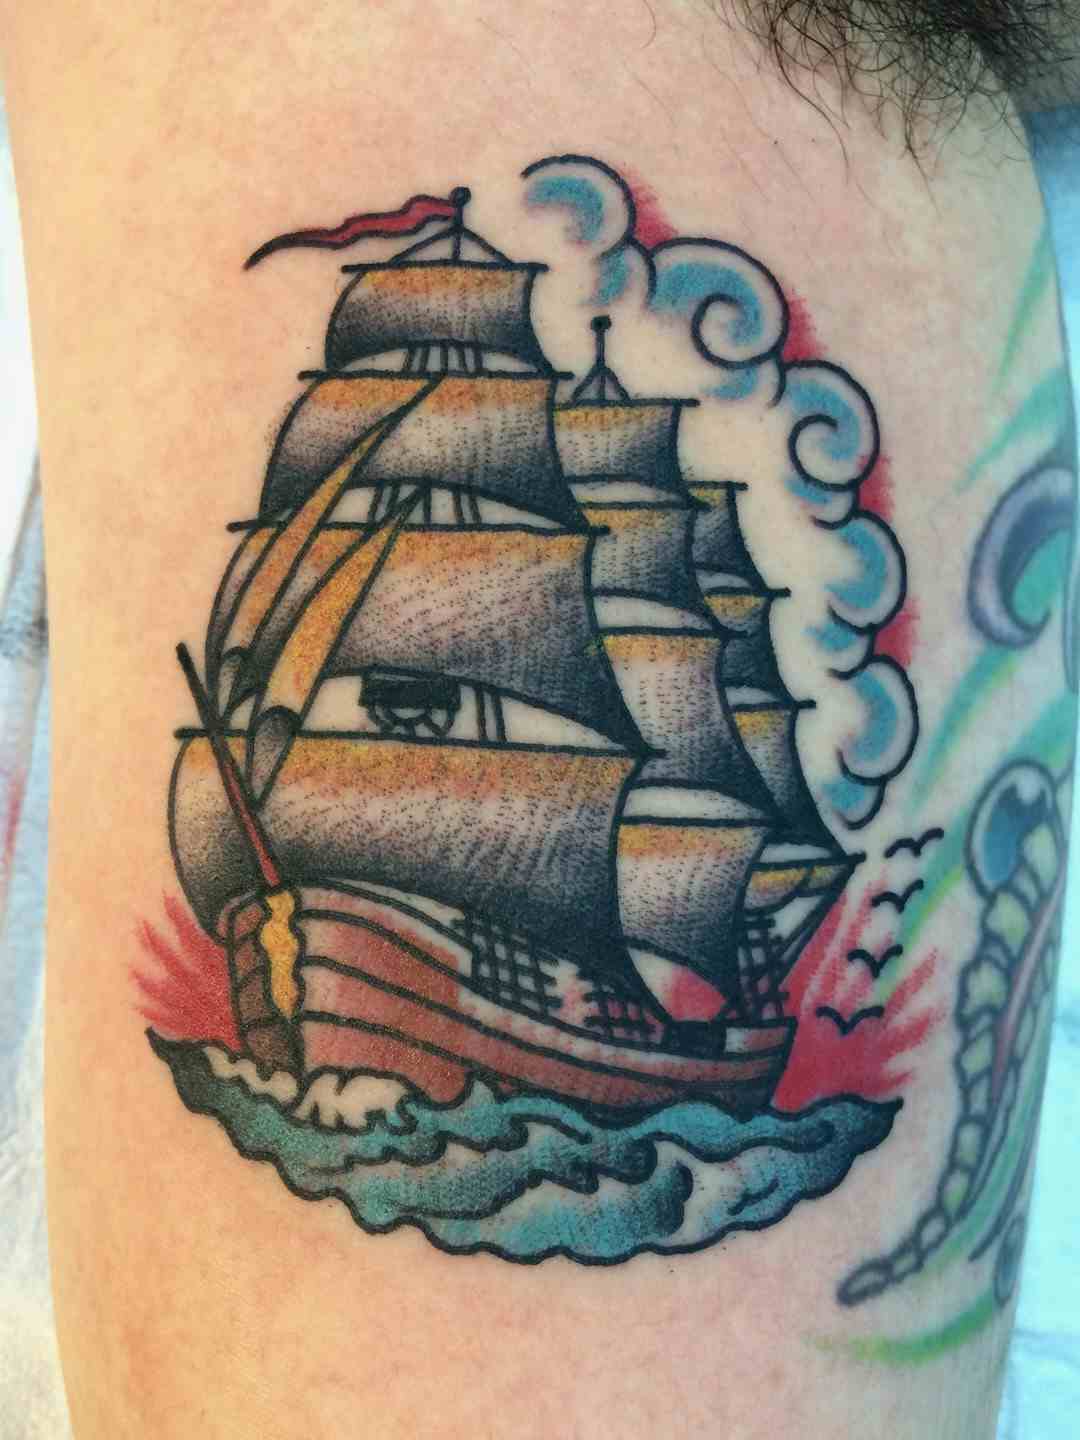 Sunset ship tattoo